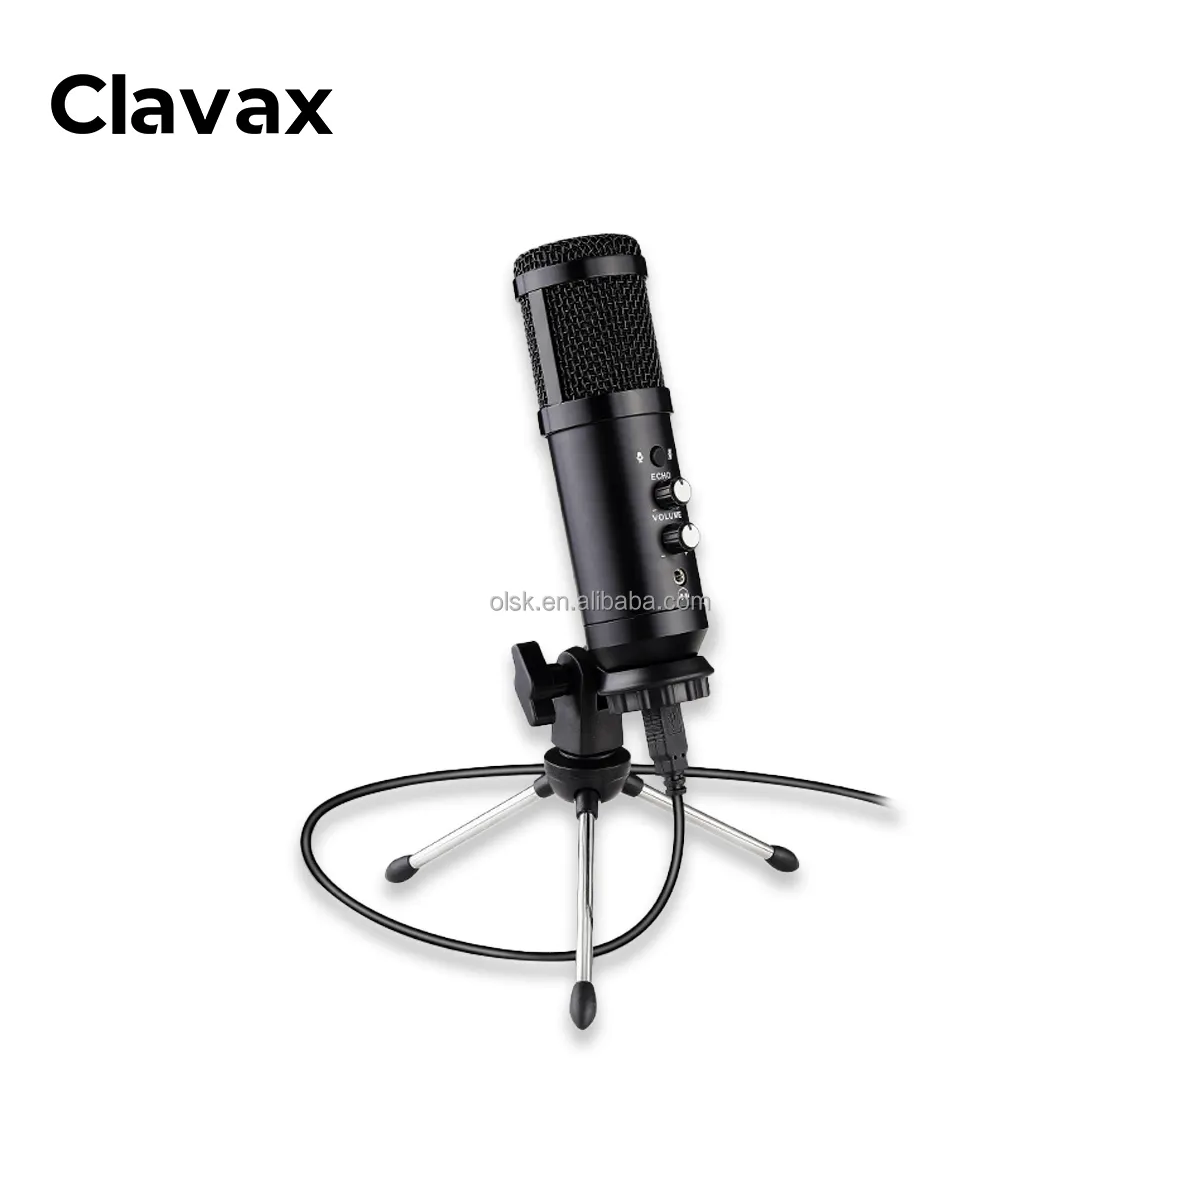 Clavax CLUSB-868 professionale cablato microfono a condensatore Computer USB Set di supporto per microfono per Home Gaming Studio di registrazione